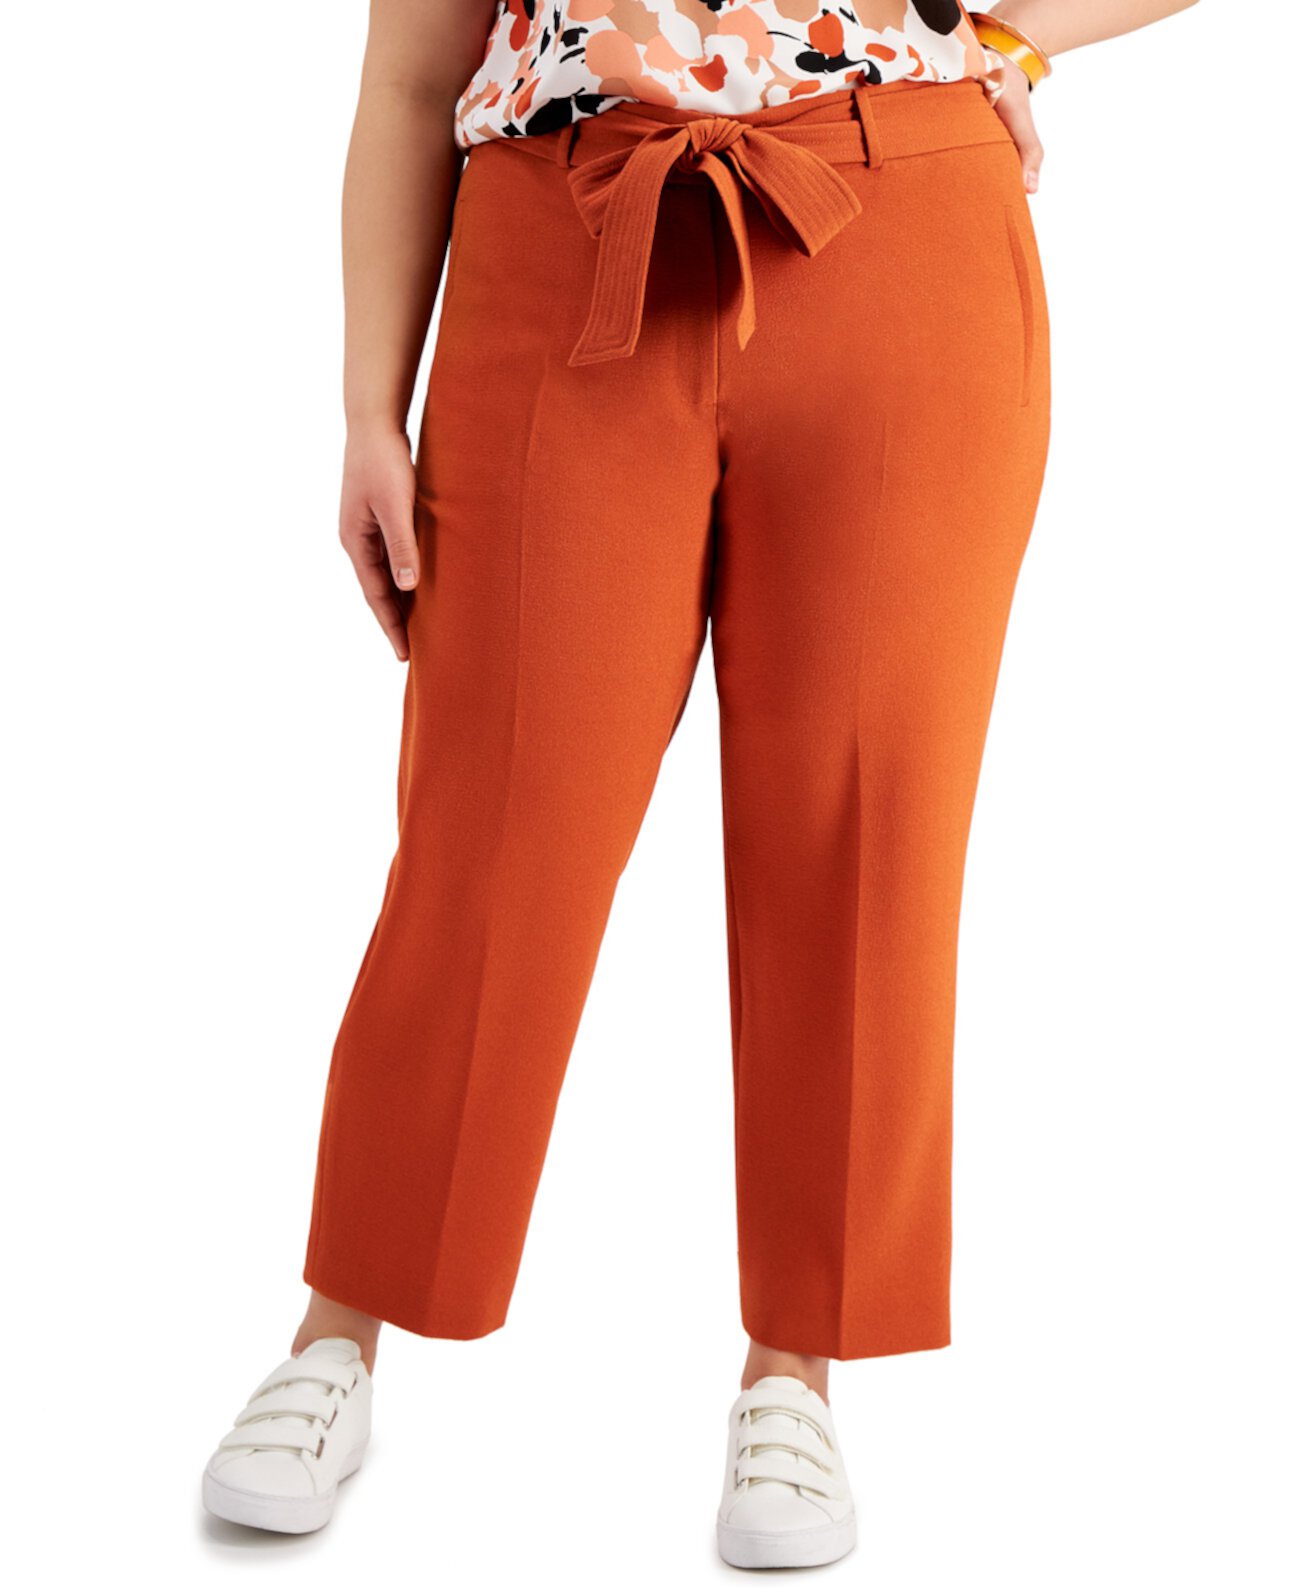 Модные прямые брюки больших размеров с поясом, созданные для Macy's Bar III